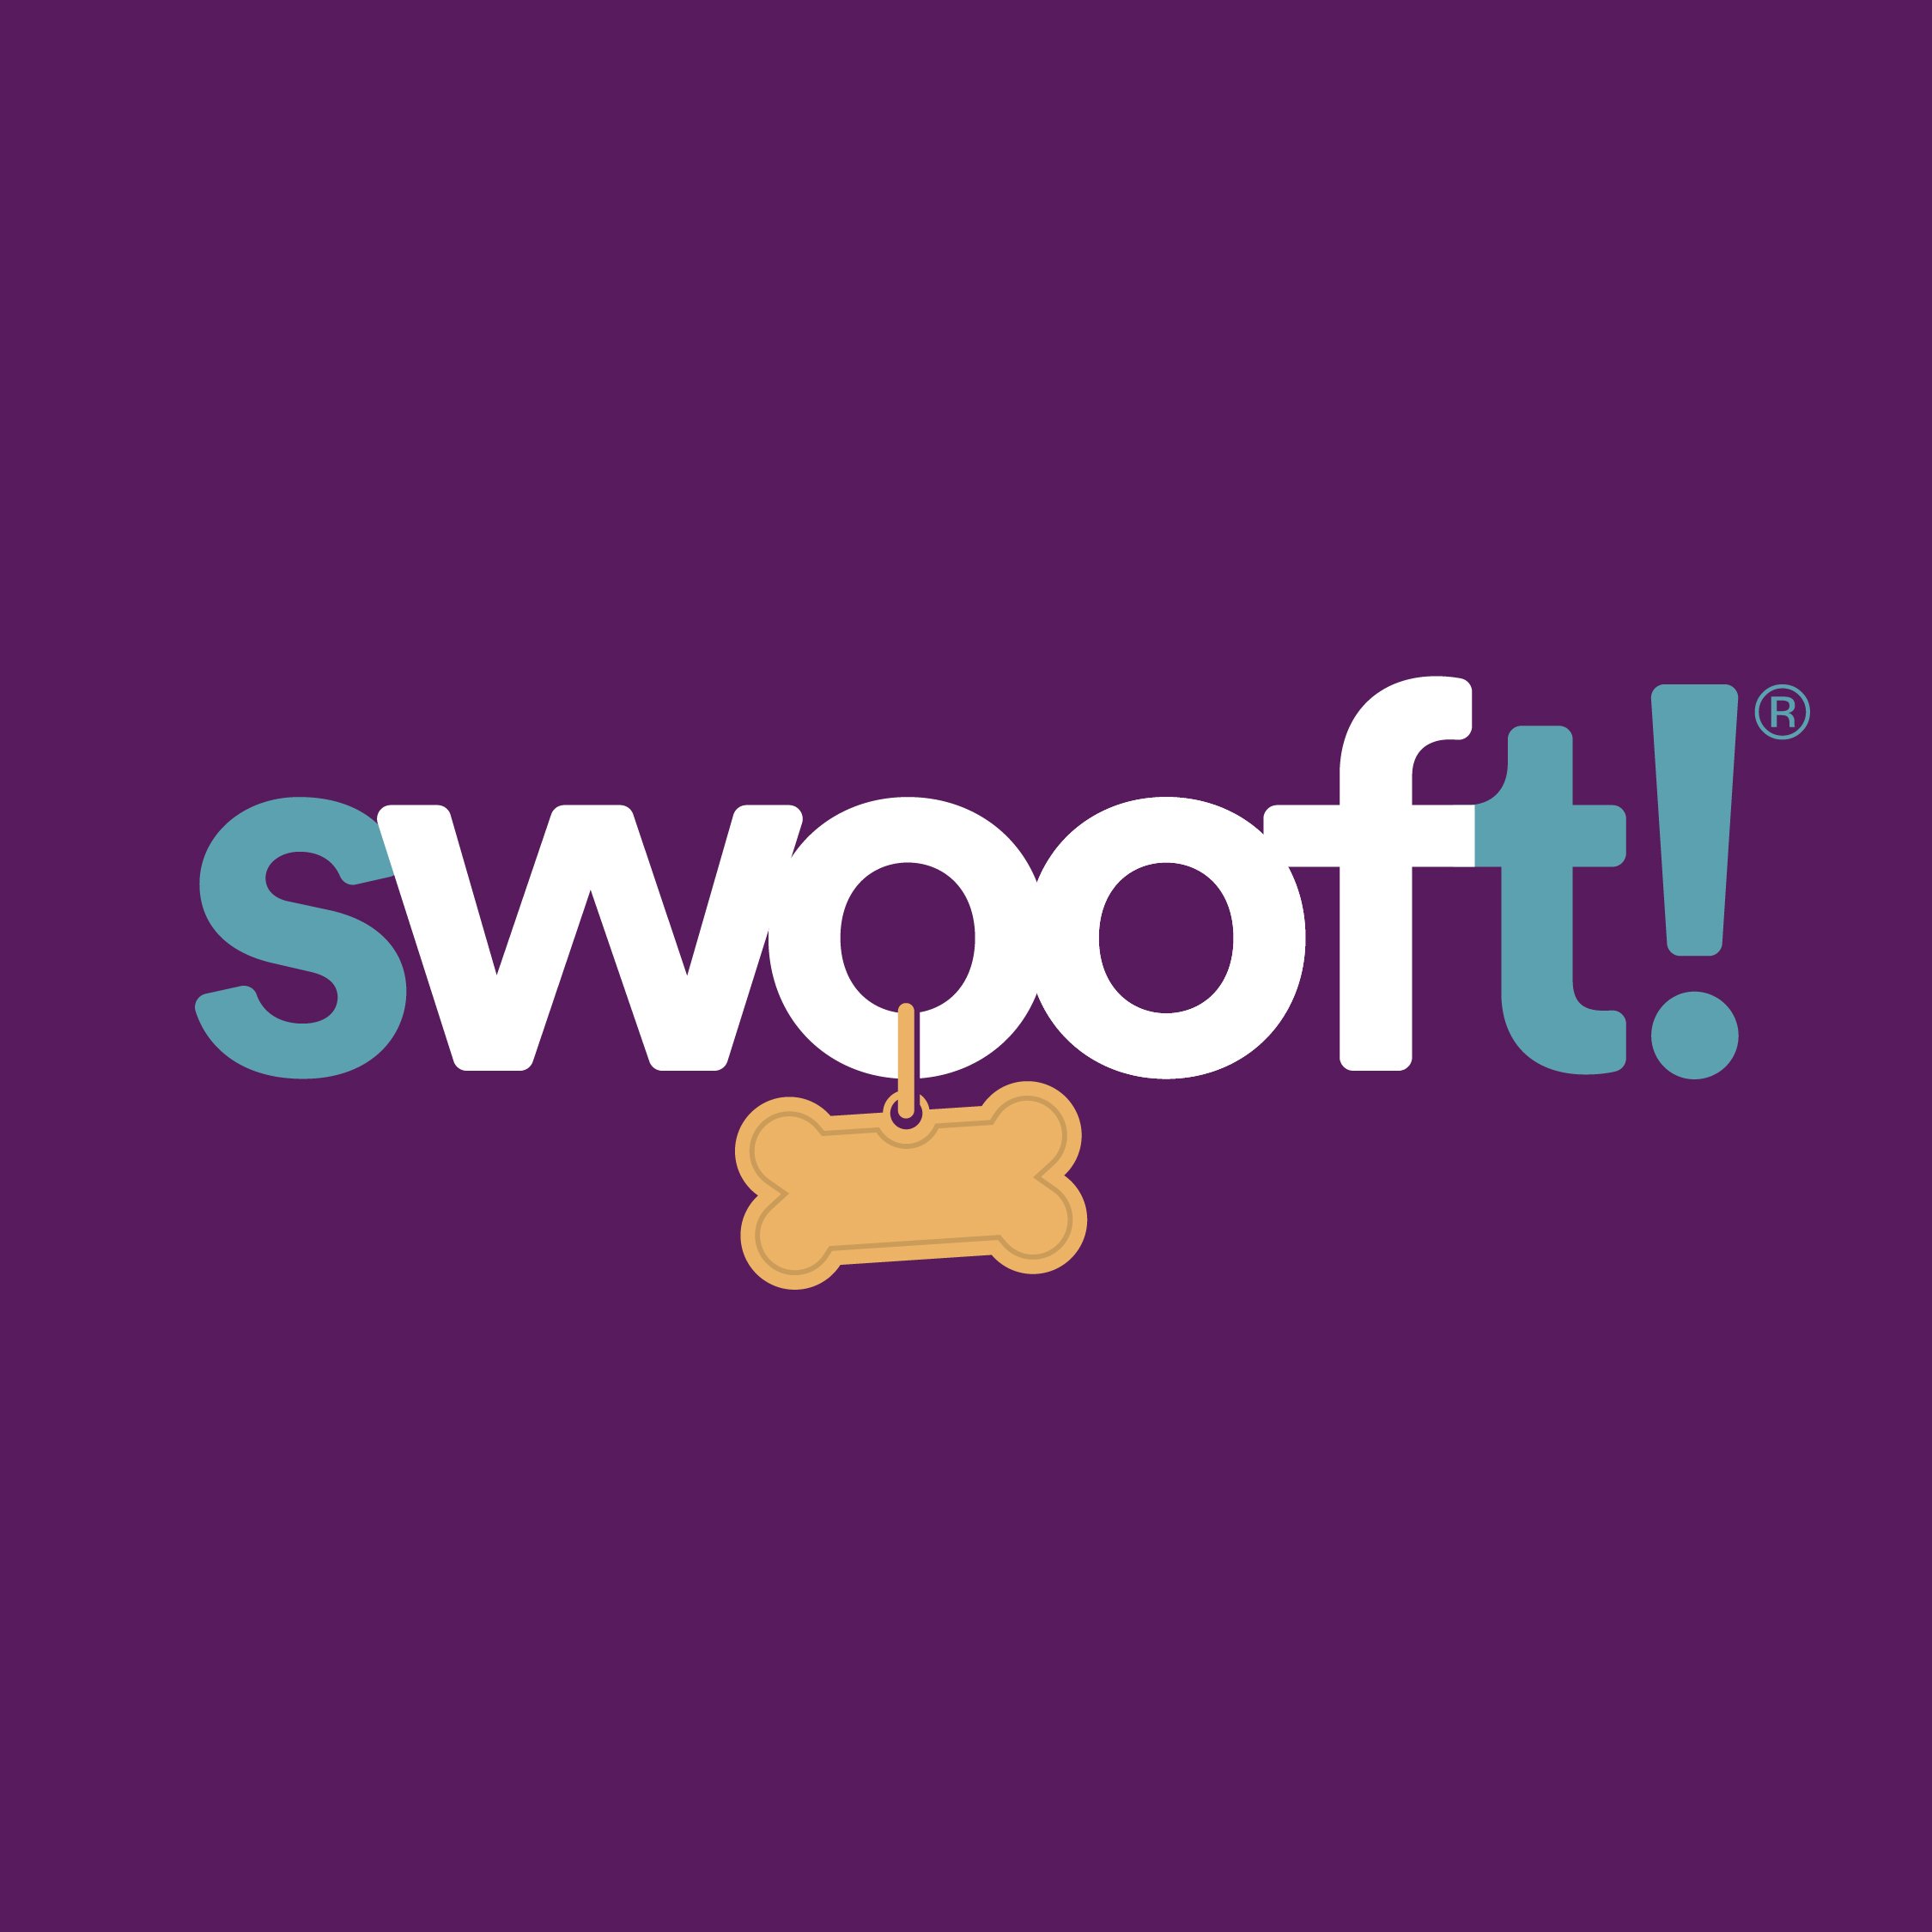 SwooftLogo-SocialMedia-LetteringWorks-01.jpg